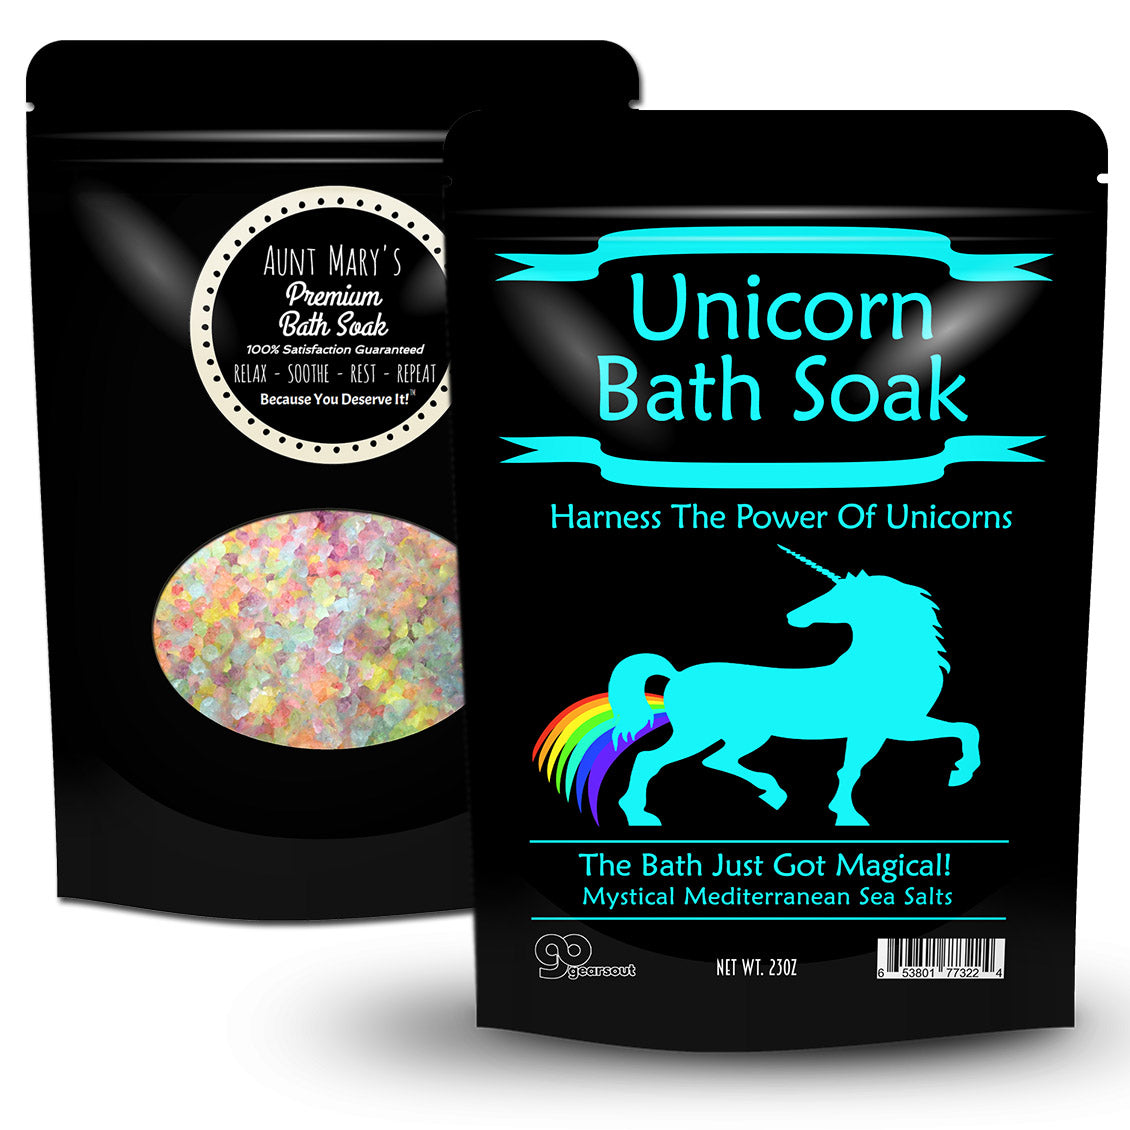 Unicorn Bath Soak